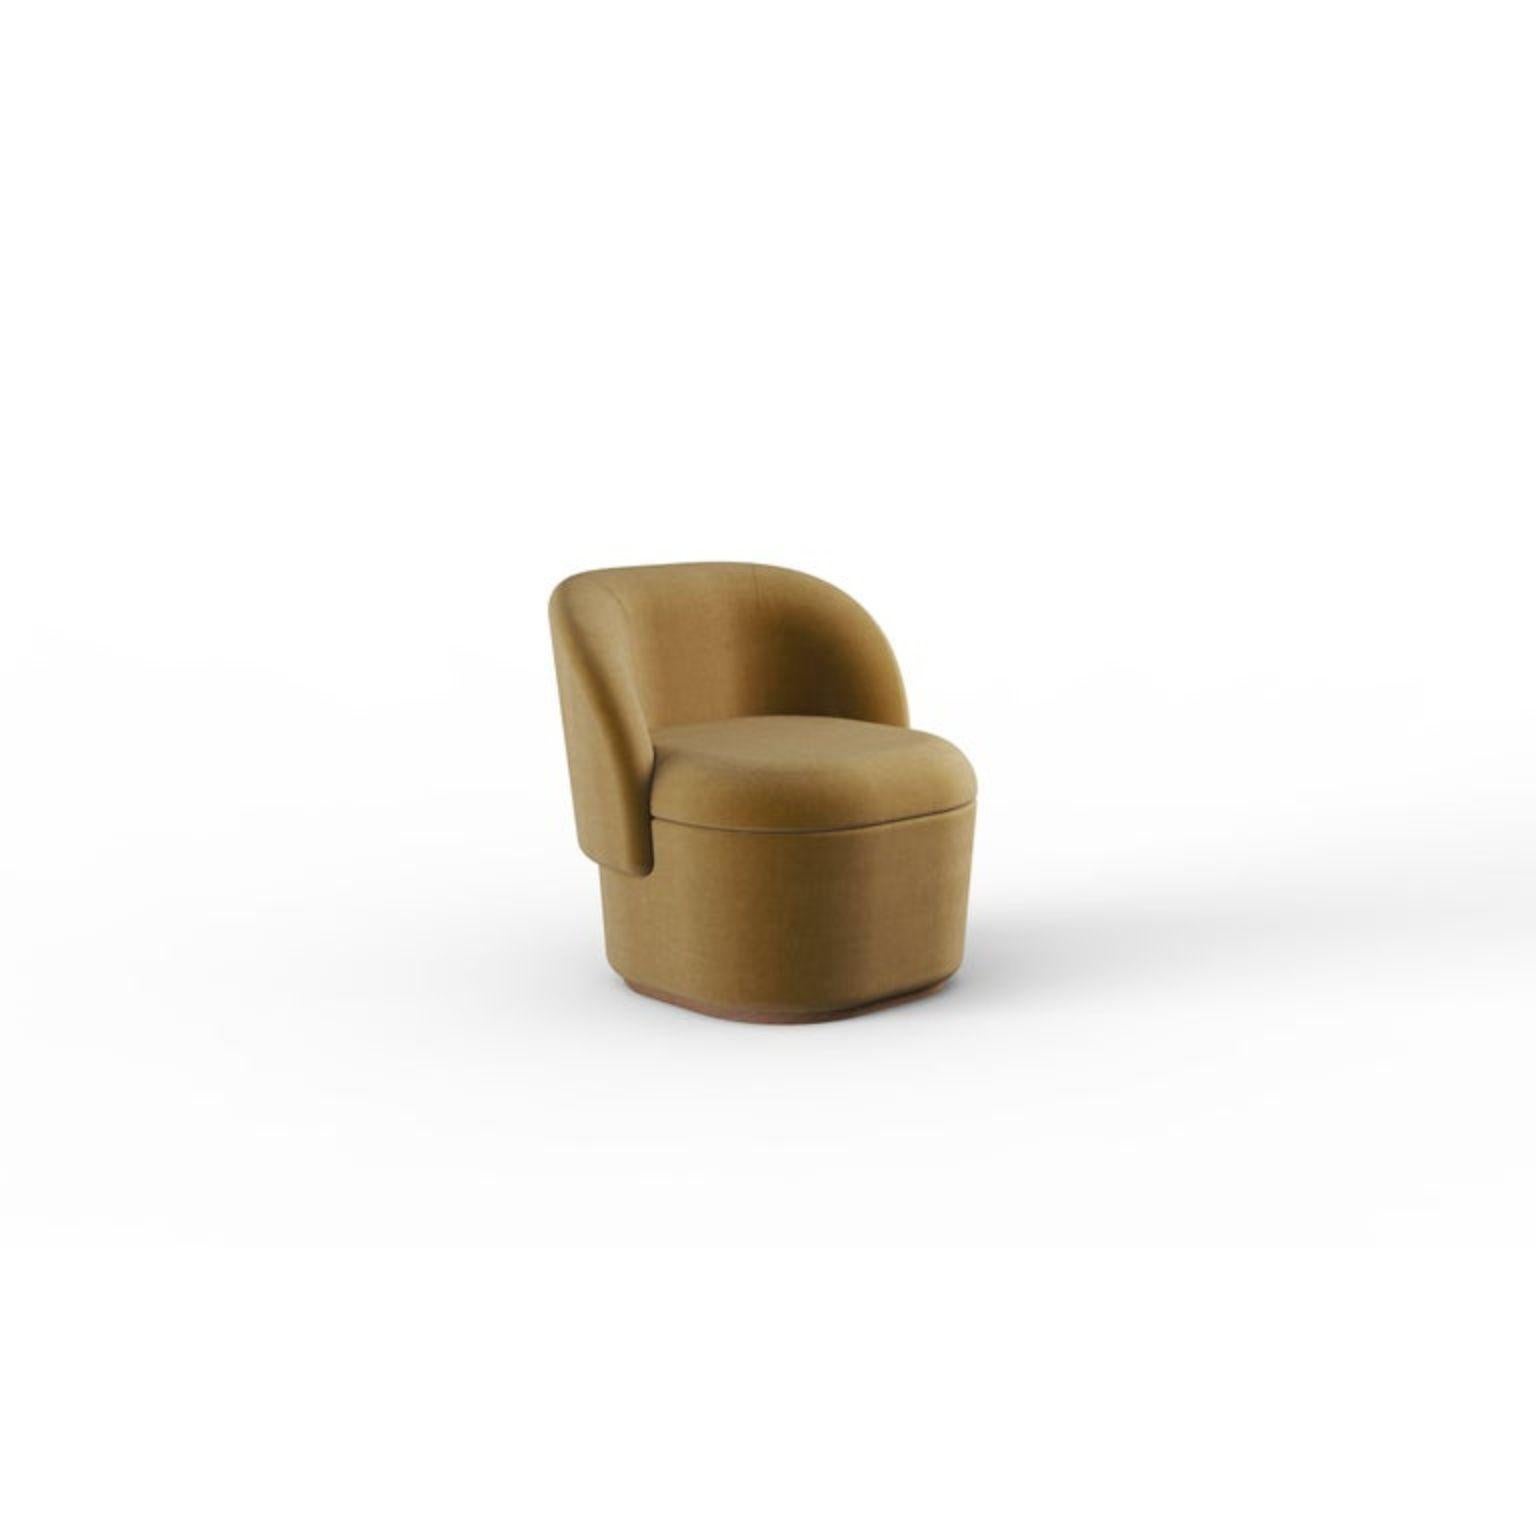 Zeitgenössischer Sessel Bisou
Abmessungen: T 70 x B 65 x H 74 cm
Sitzhöhe: 44 cm
MATERIALIEN: Stoff, Massivholz
Auch in Leder erhältlich.



